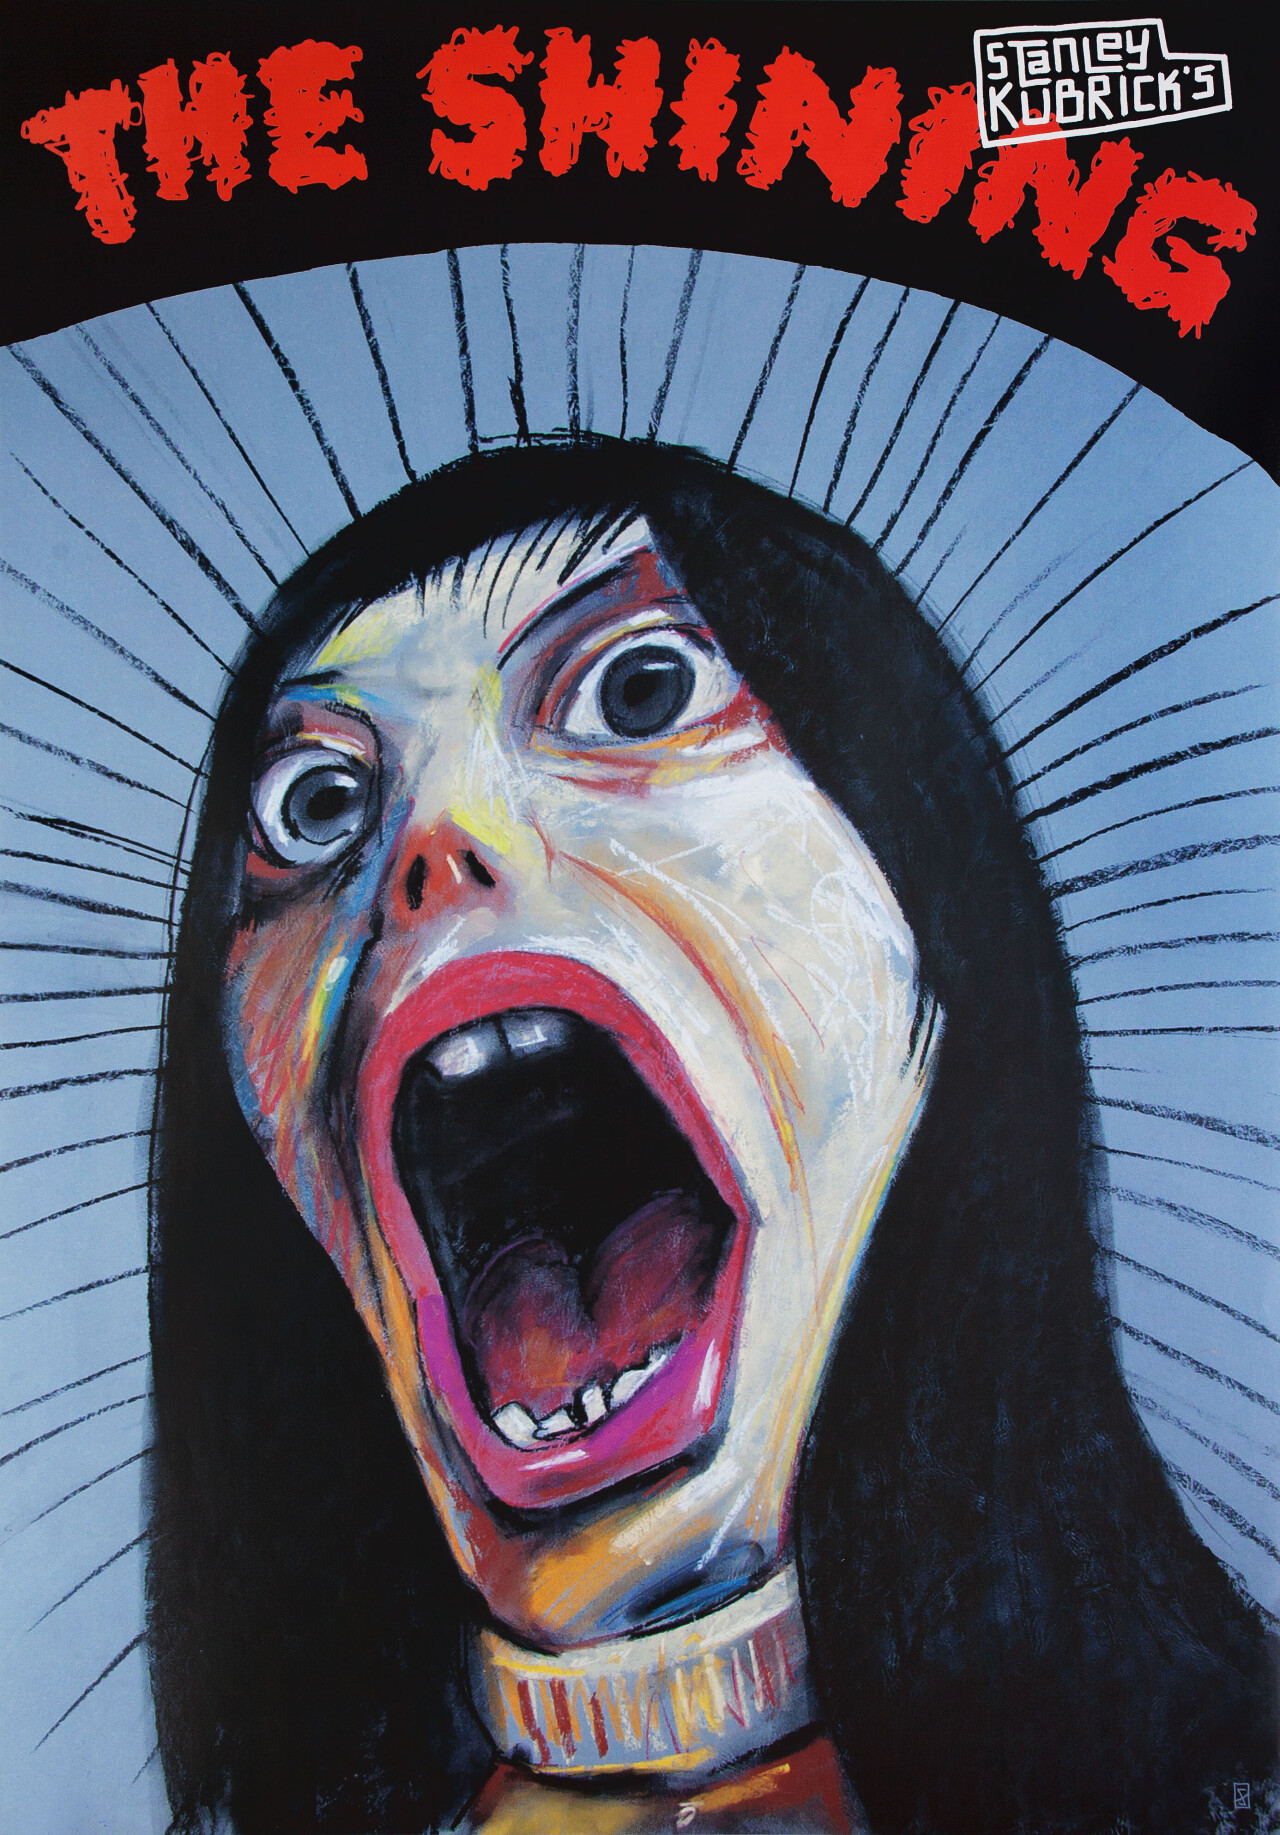 Сияние (The Shining, 1980), режиссёр Стэнли Кубрик, польский постер к фильму, автор Лешек Жебровски (ужасы, 2007 год)